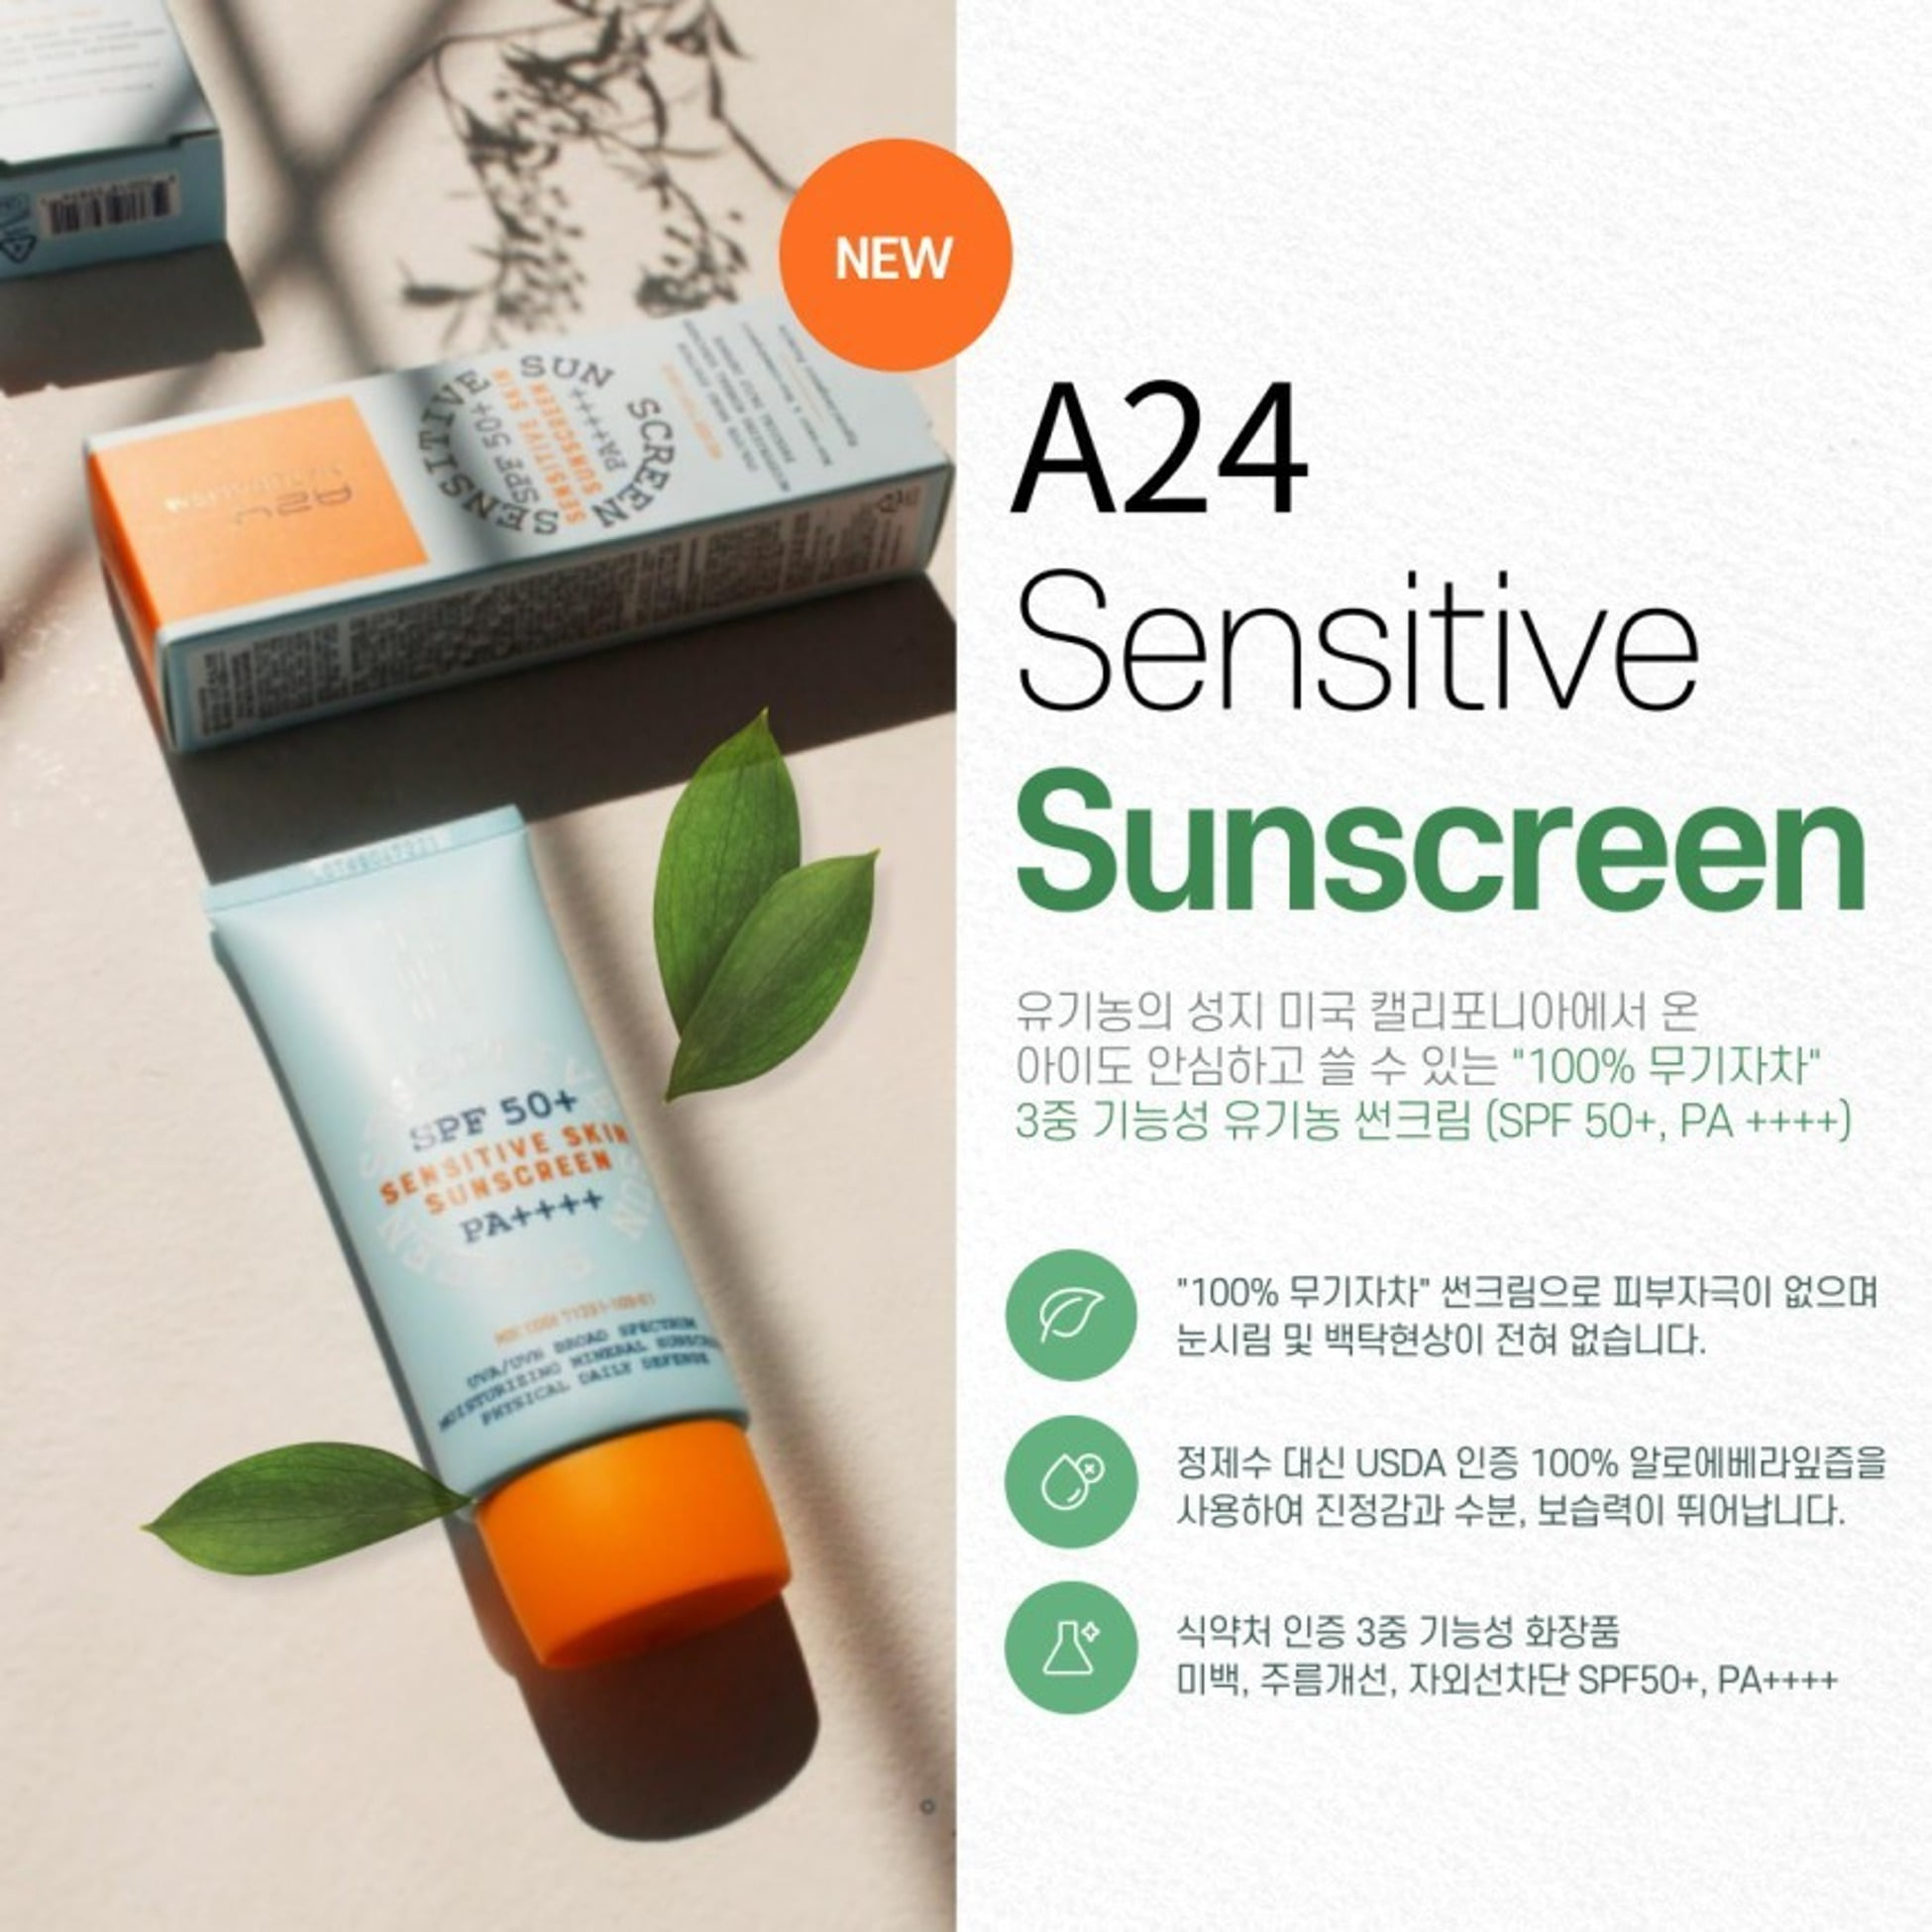 A24 Sensive Skin Sunscreen 100% Inorganic Tea Sunscreen 60g